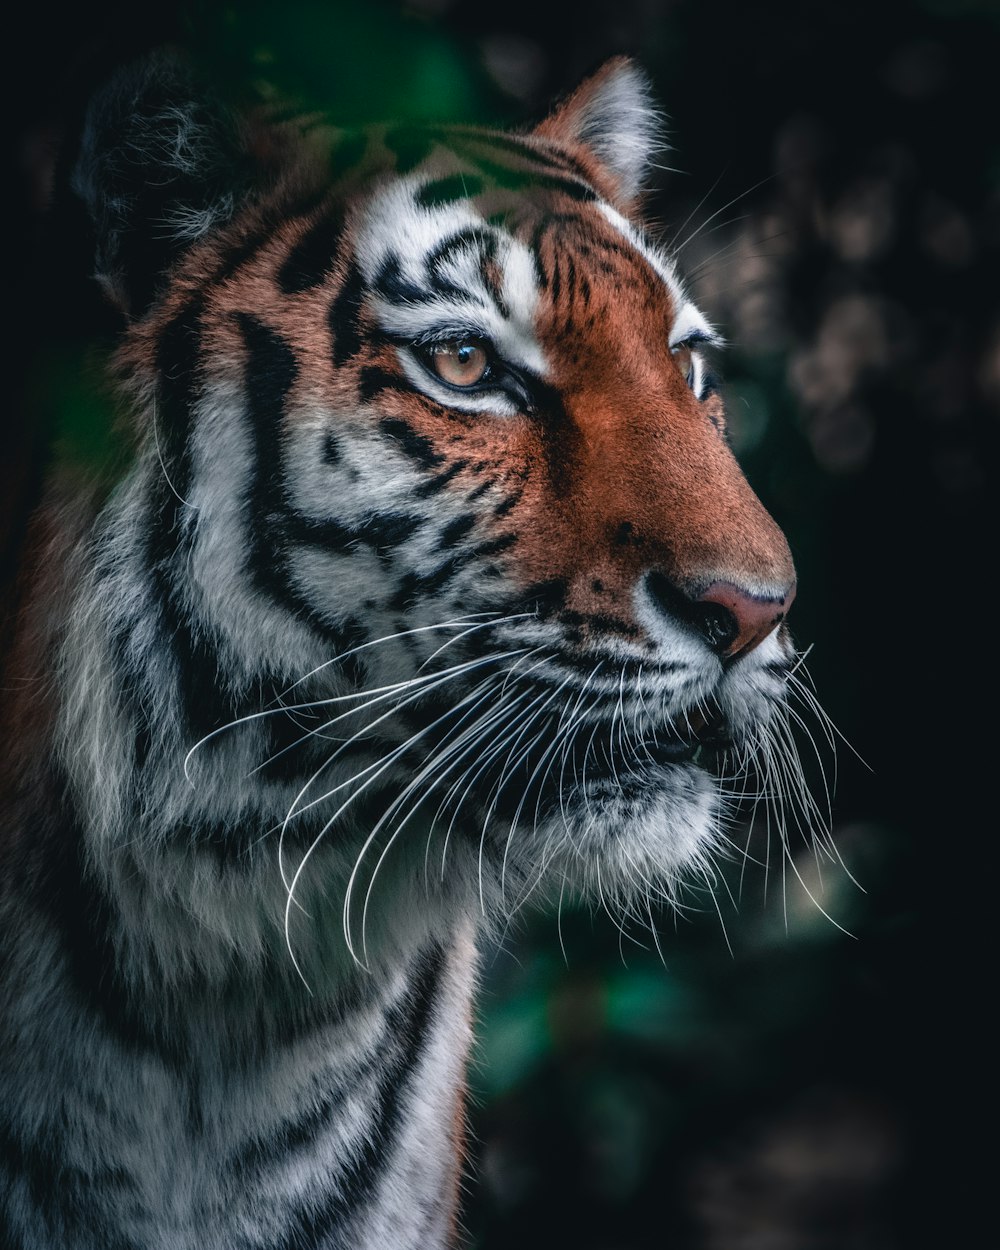 tigre marrone e nera in primo piano fotografia